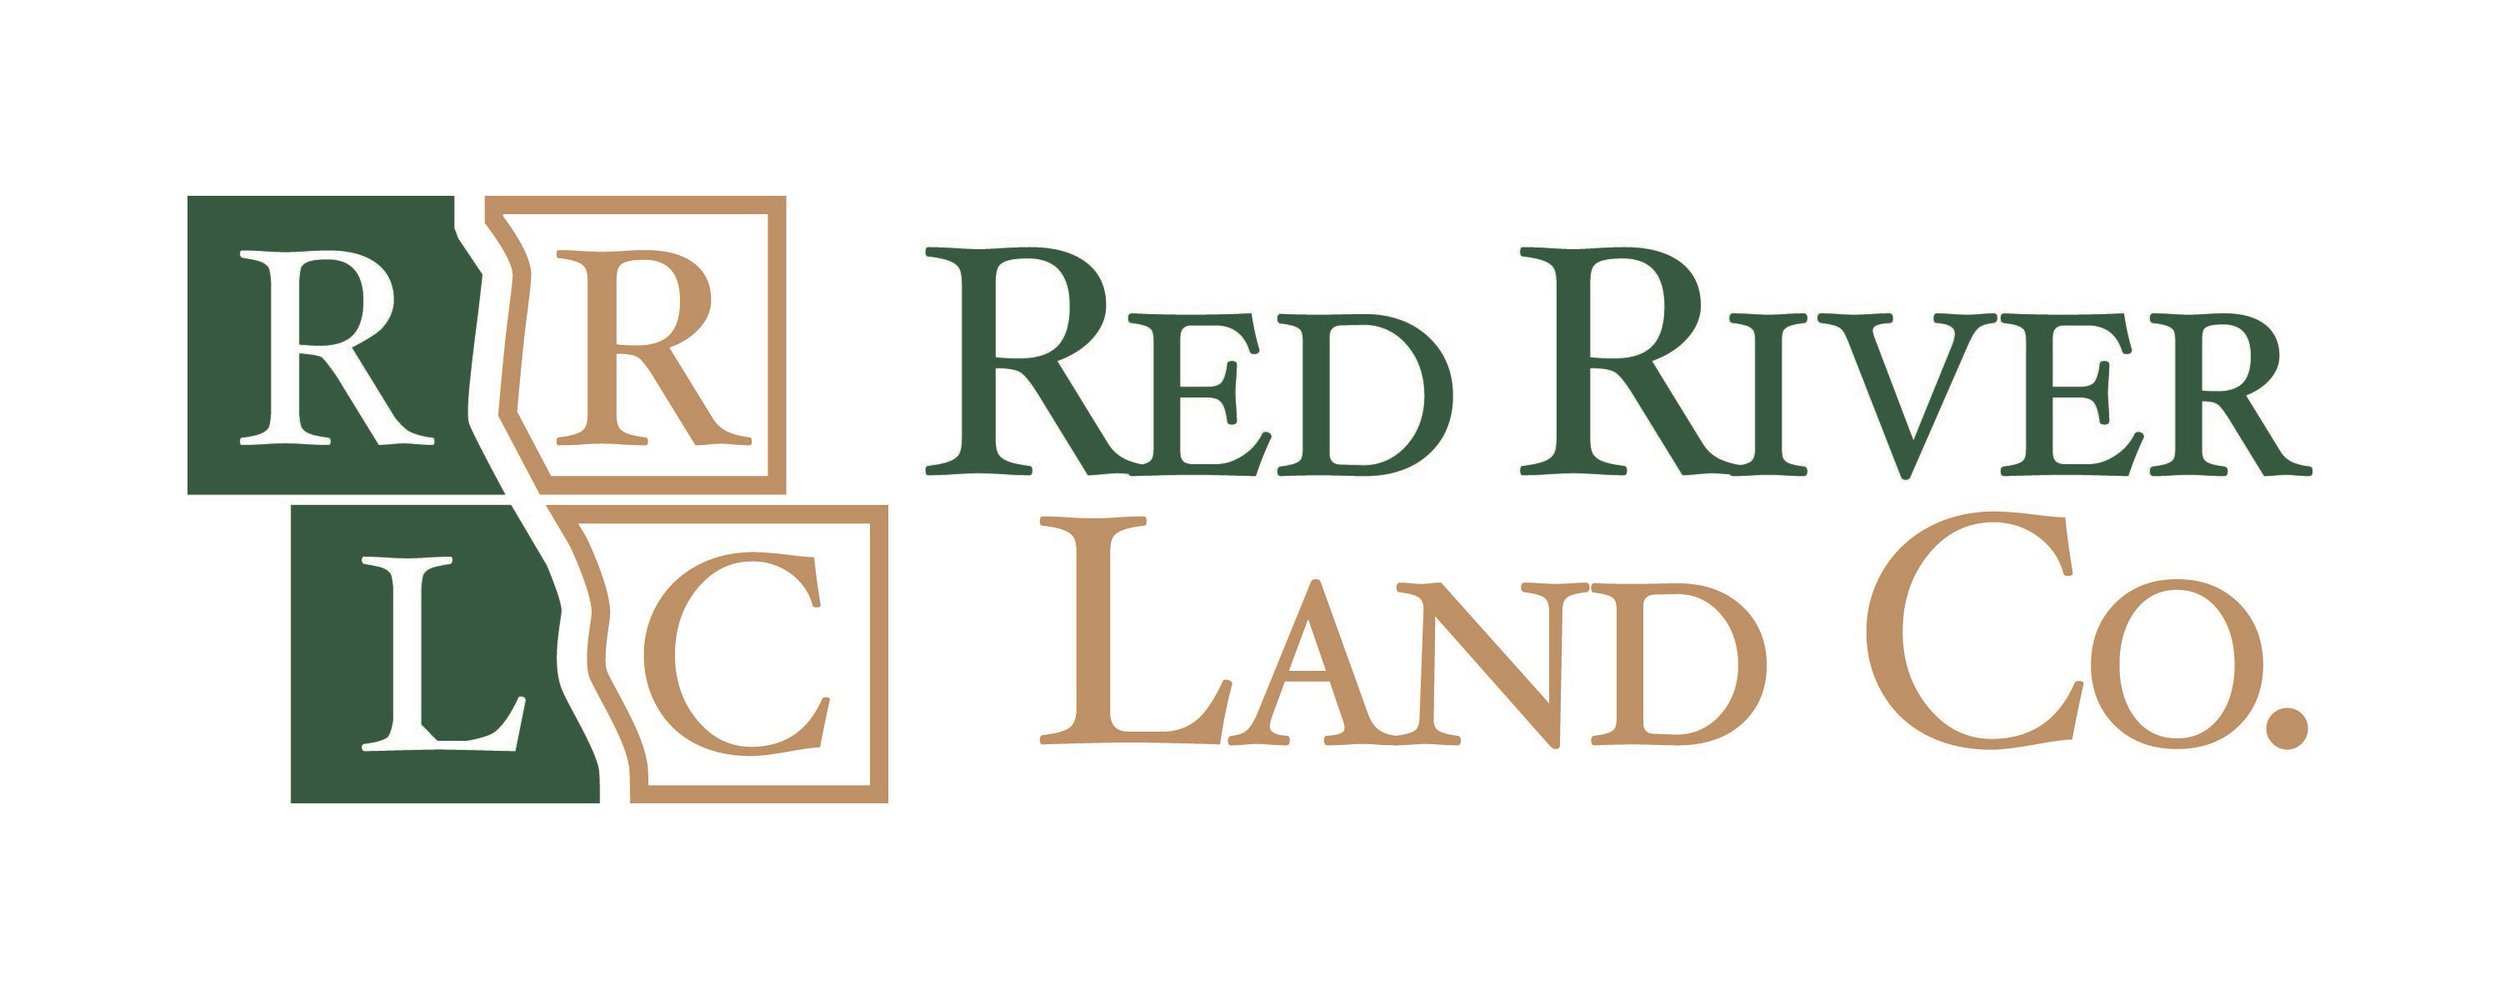 Red River Land Co. Logo.jpg